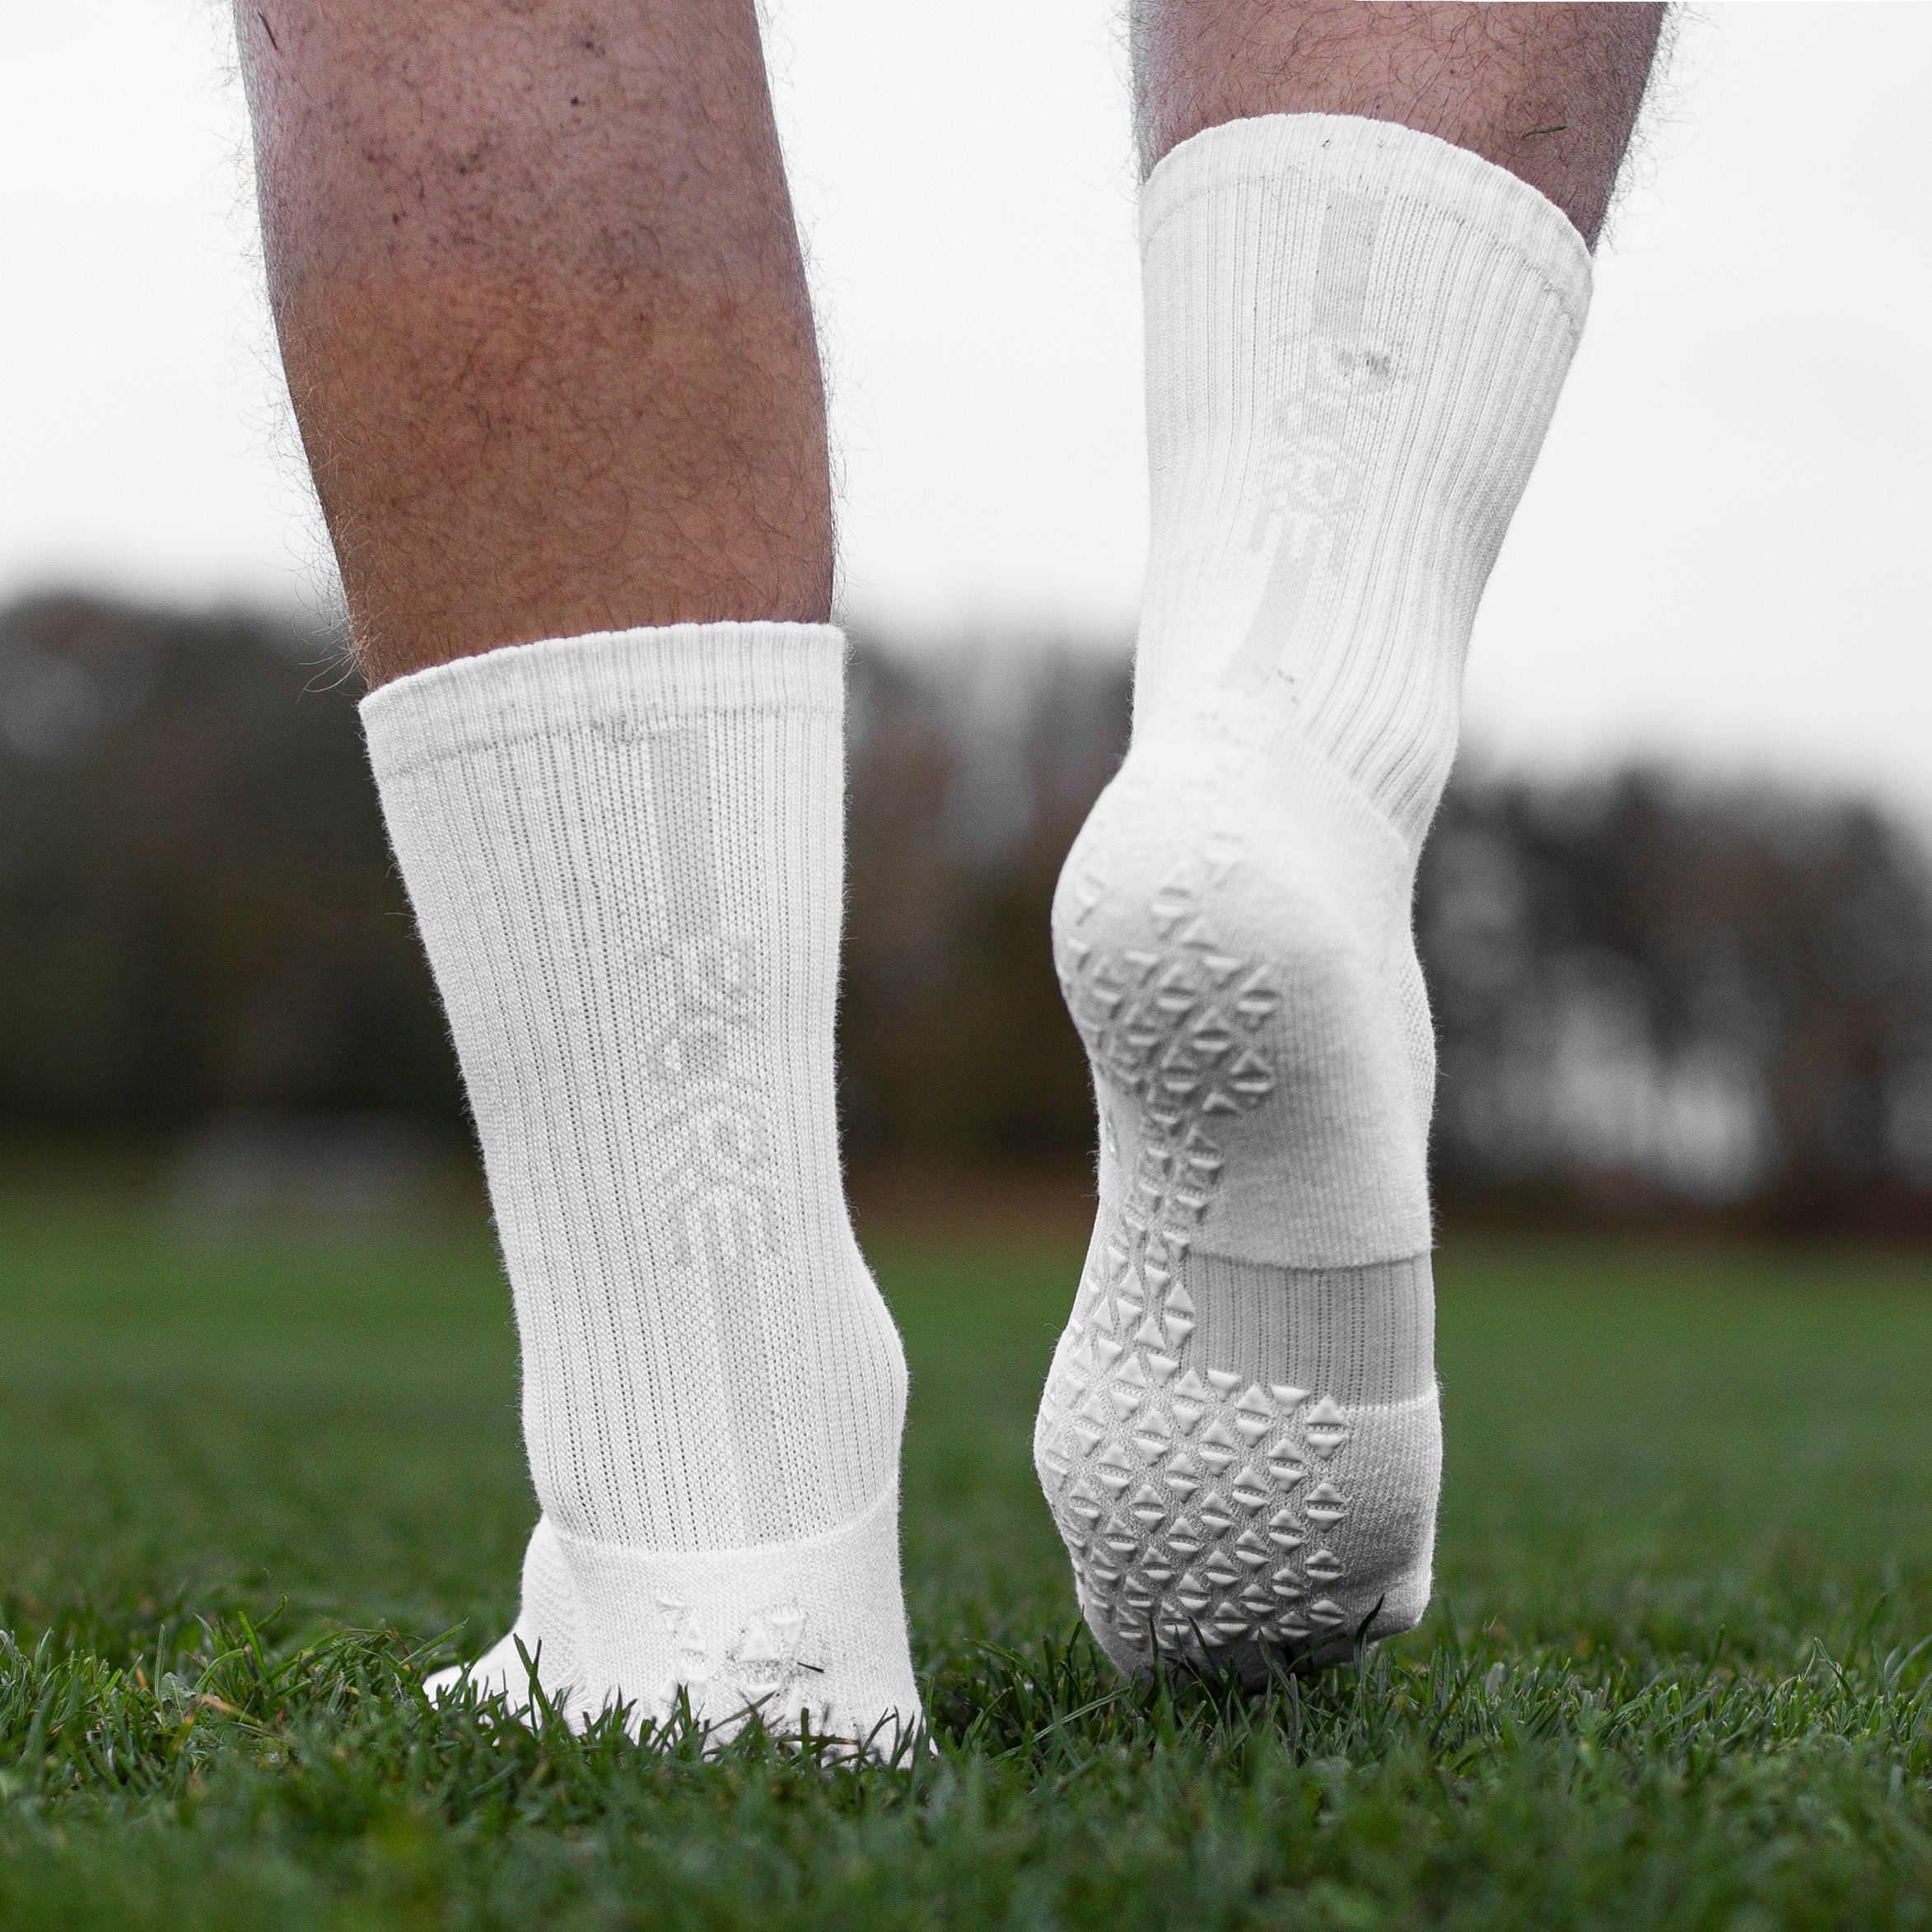 The Edge Grip Socks Football Socks-mens Football Socks Anti Slip Socks  White Football Socks Non Slip Socks For Men